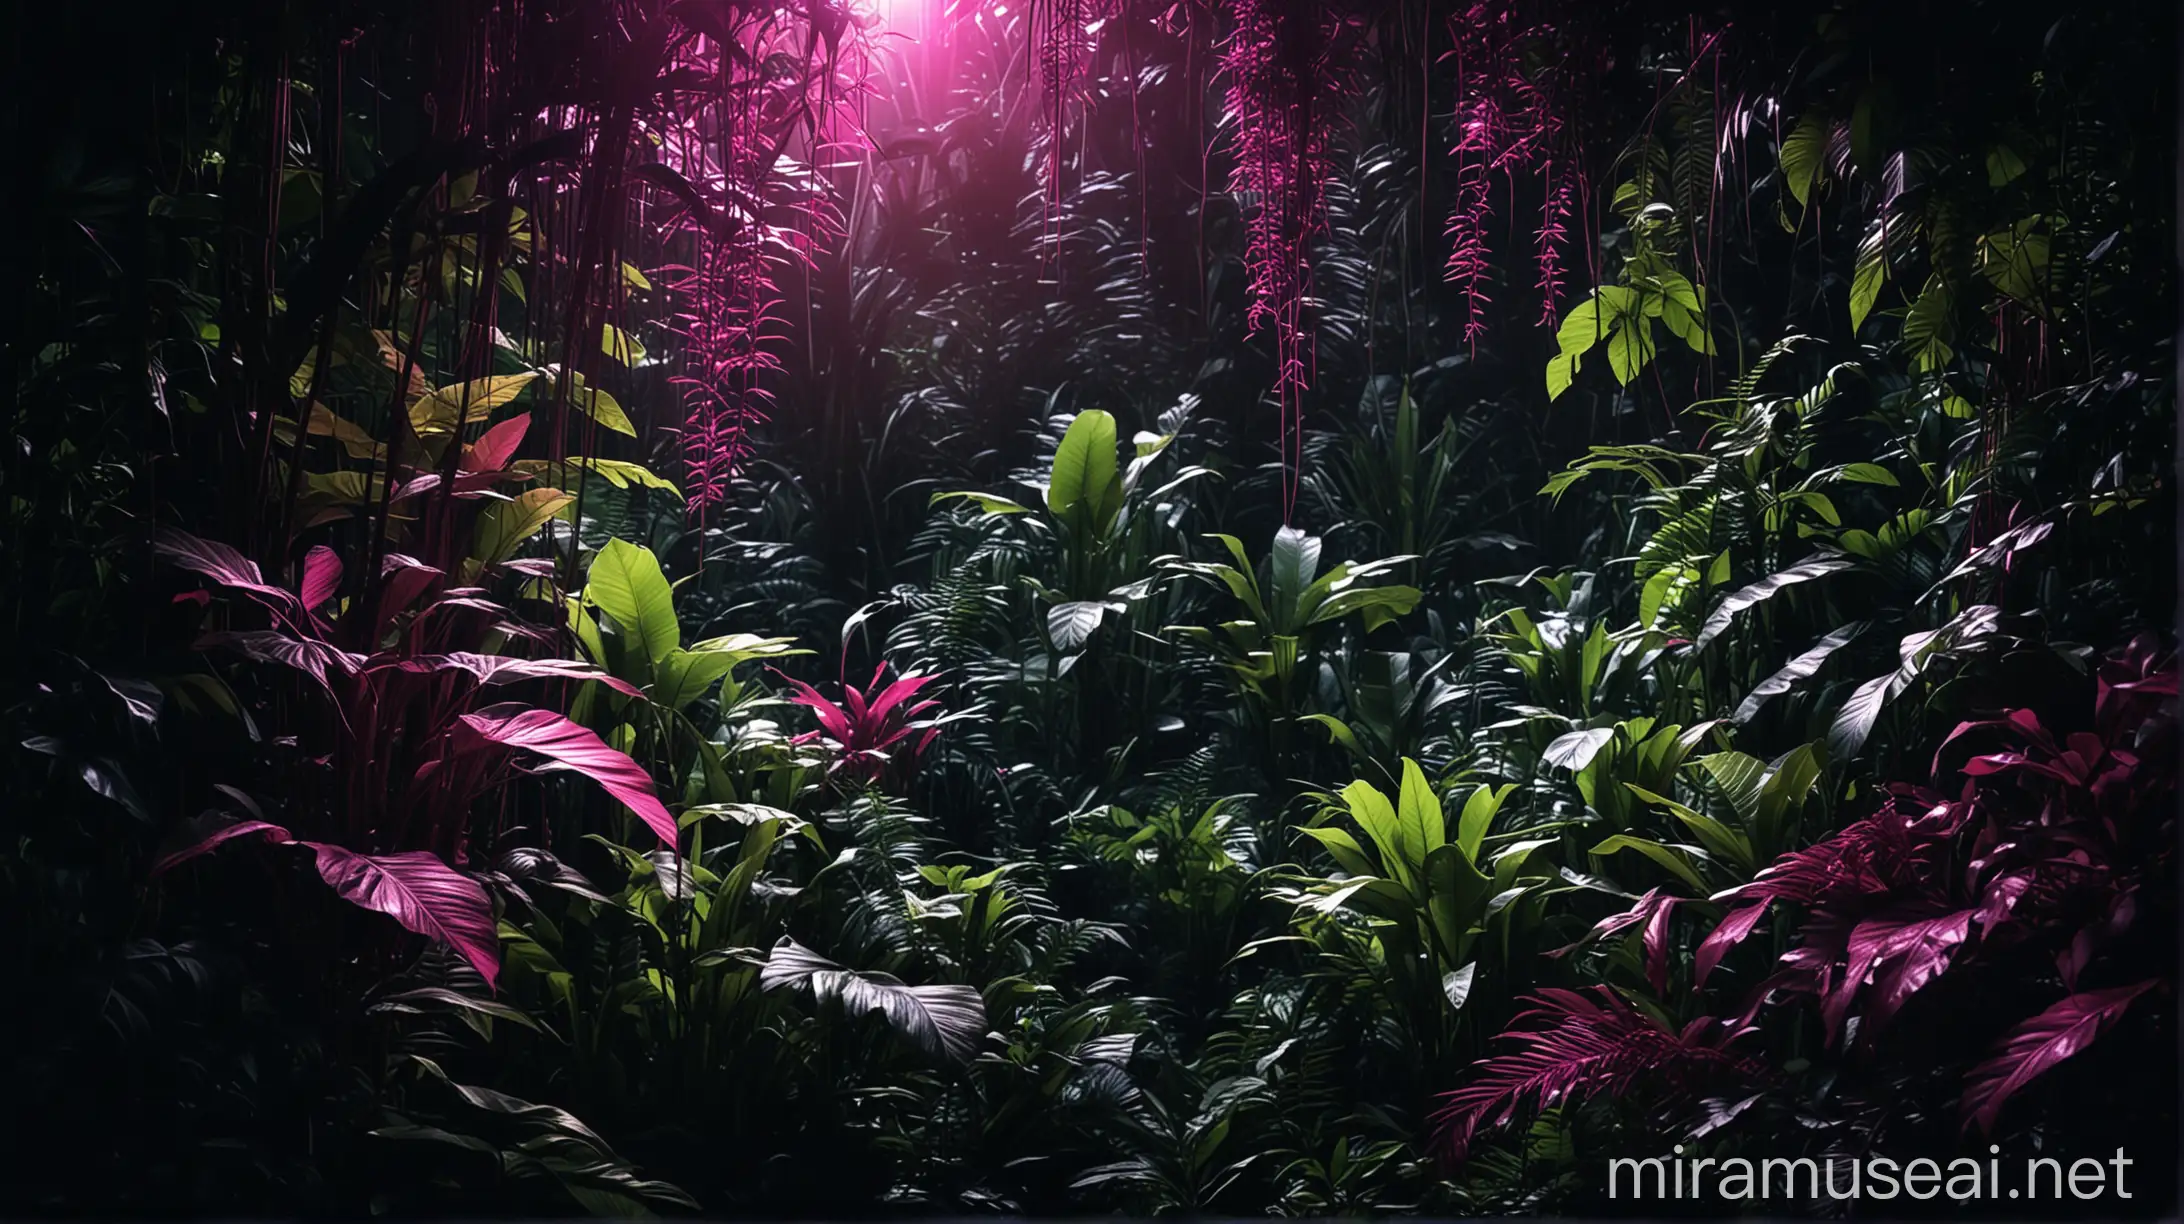 grüne jungle pflanzen in einer dunklen umgebung, magentafarbendes licht schein von hinten durch die junglepflanzen hindurch